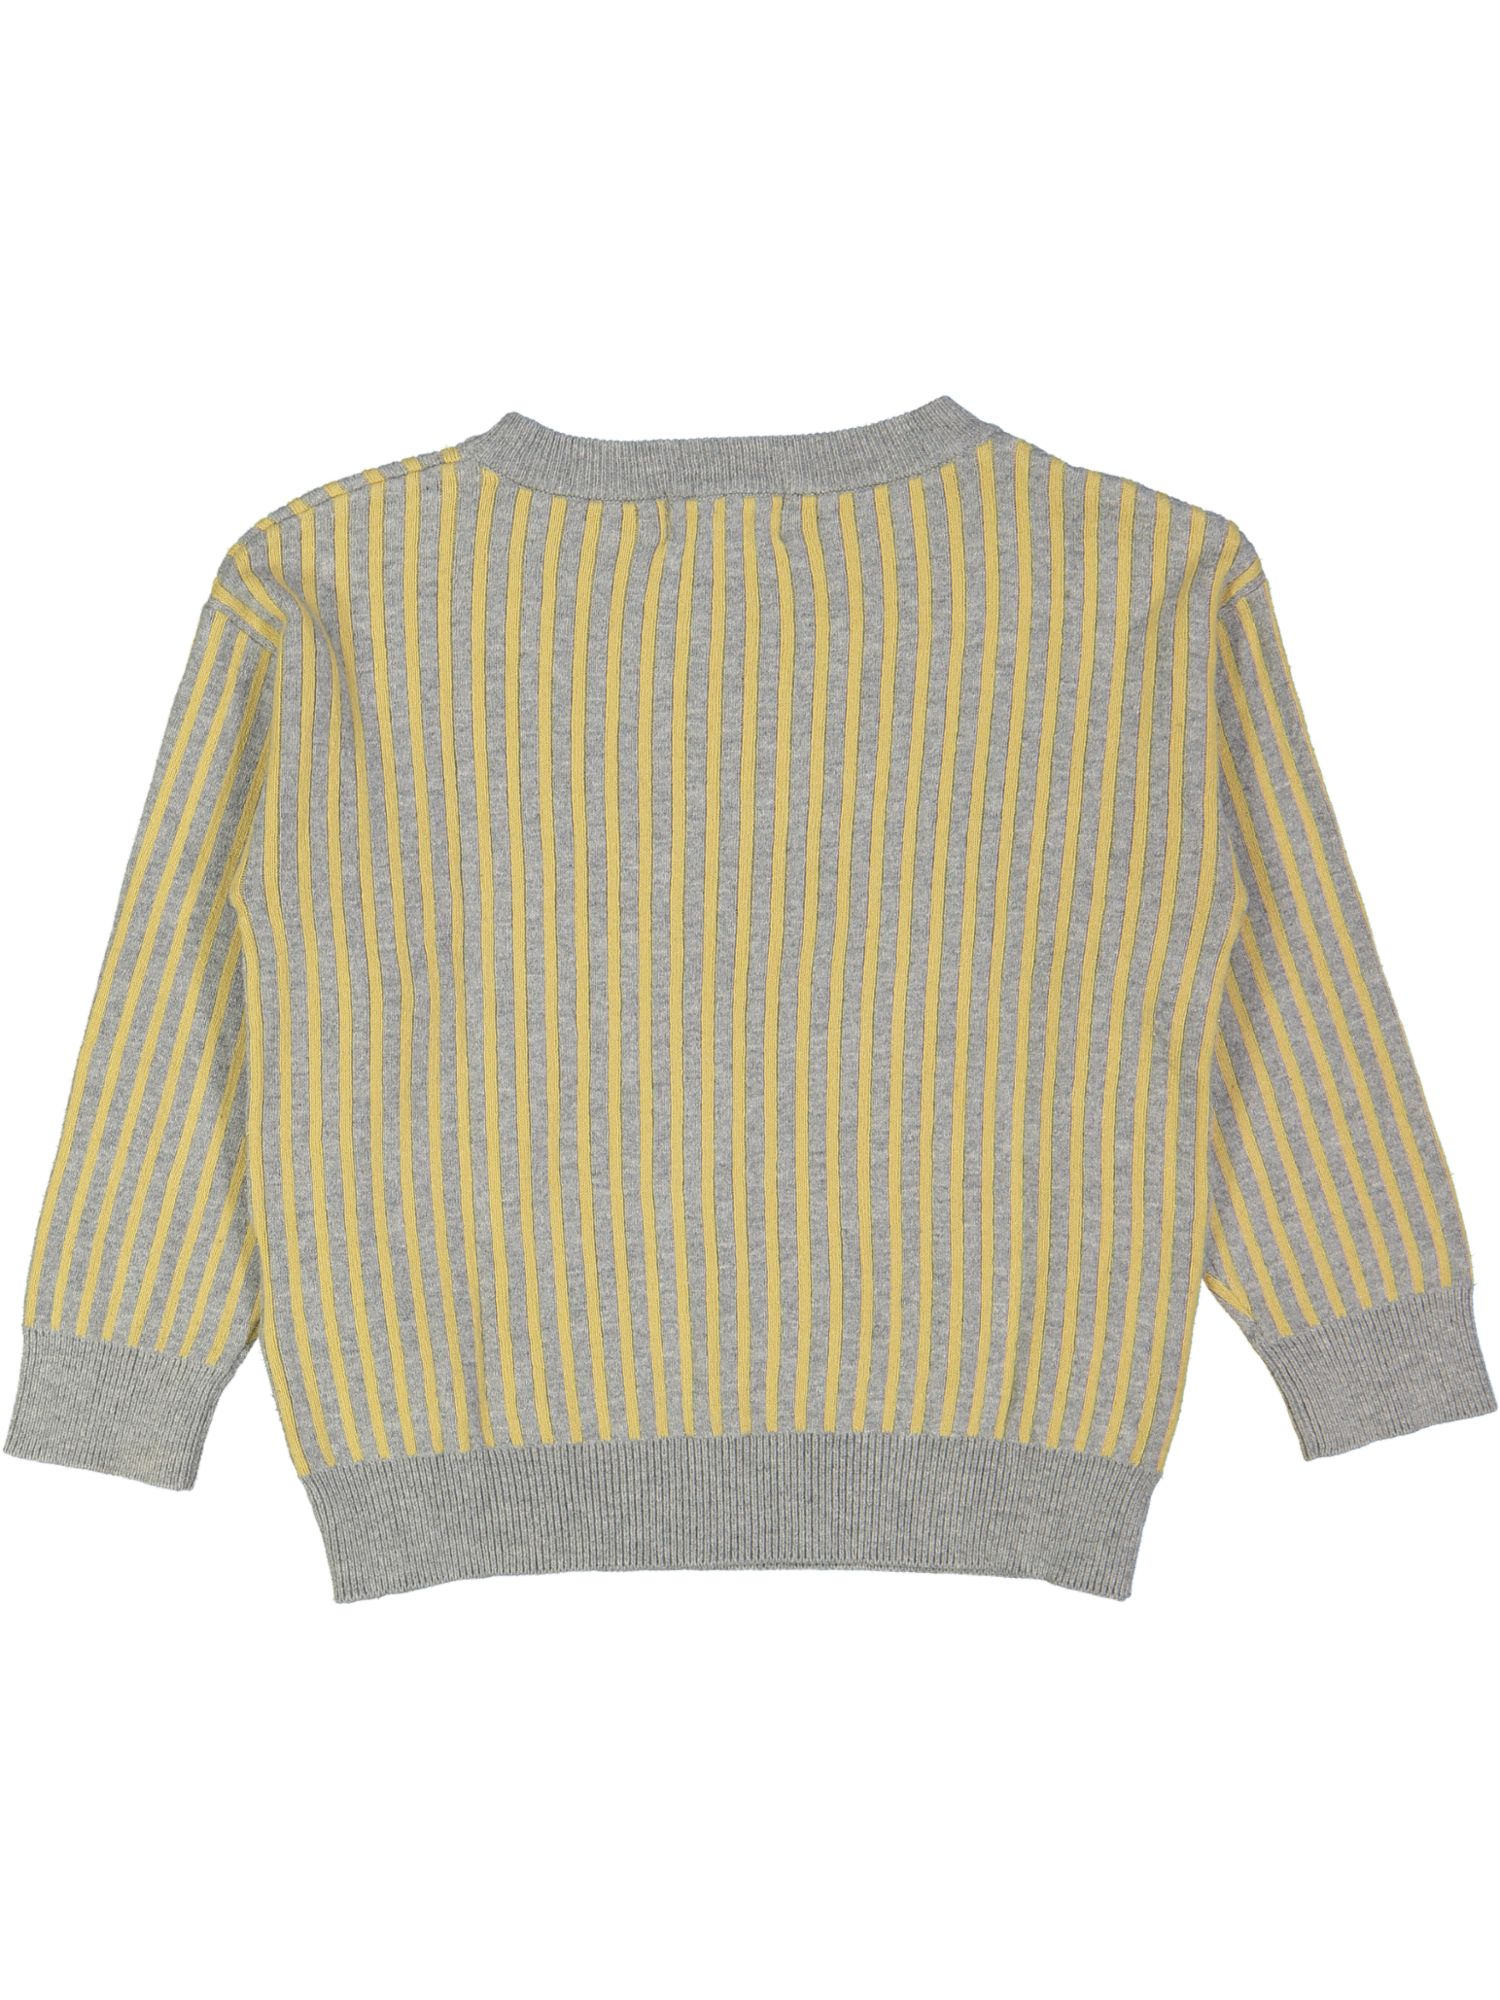 sweater grijs gele streep 02j .